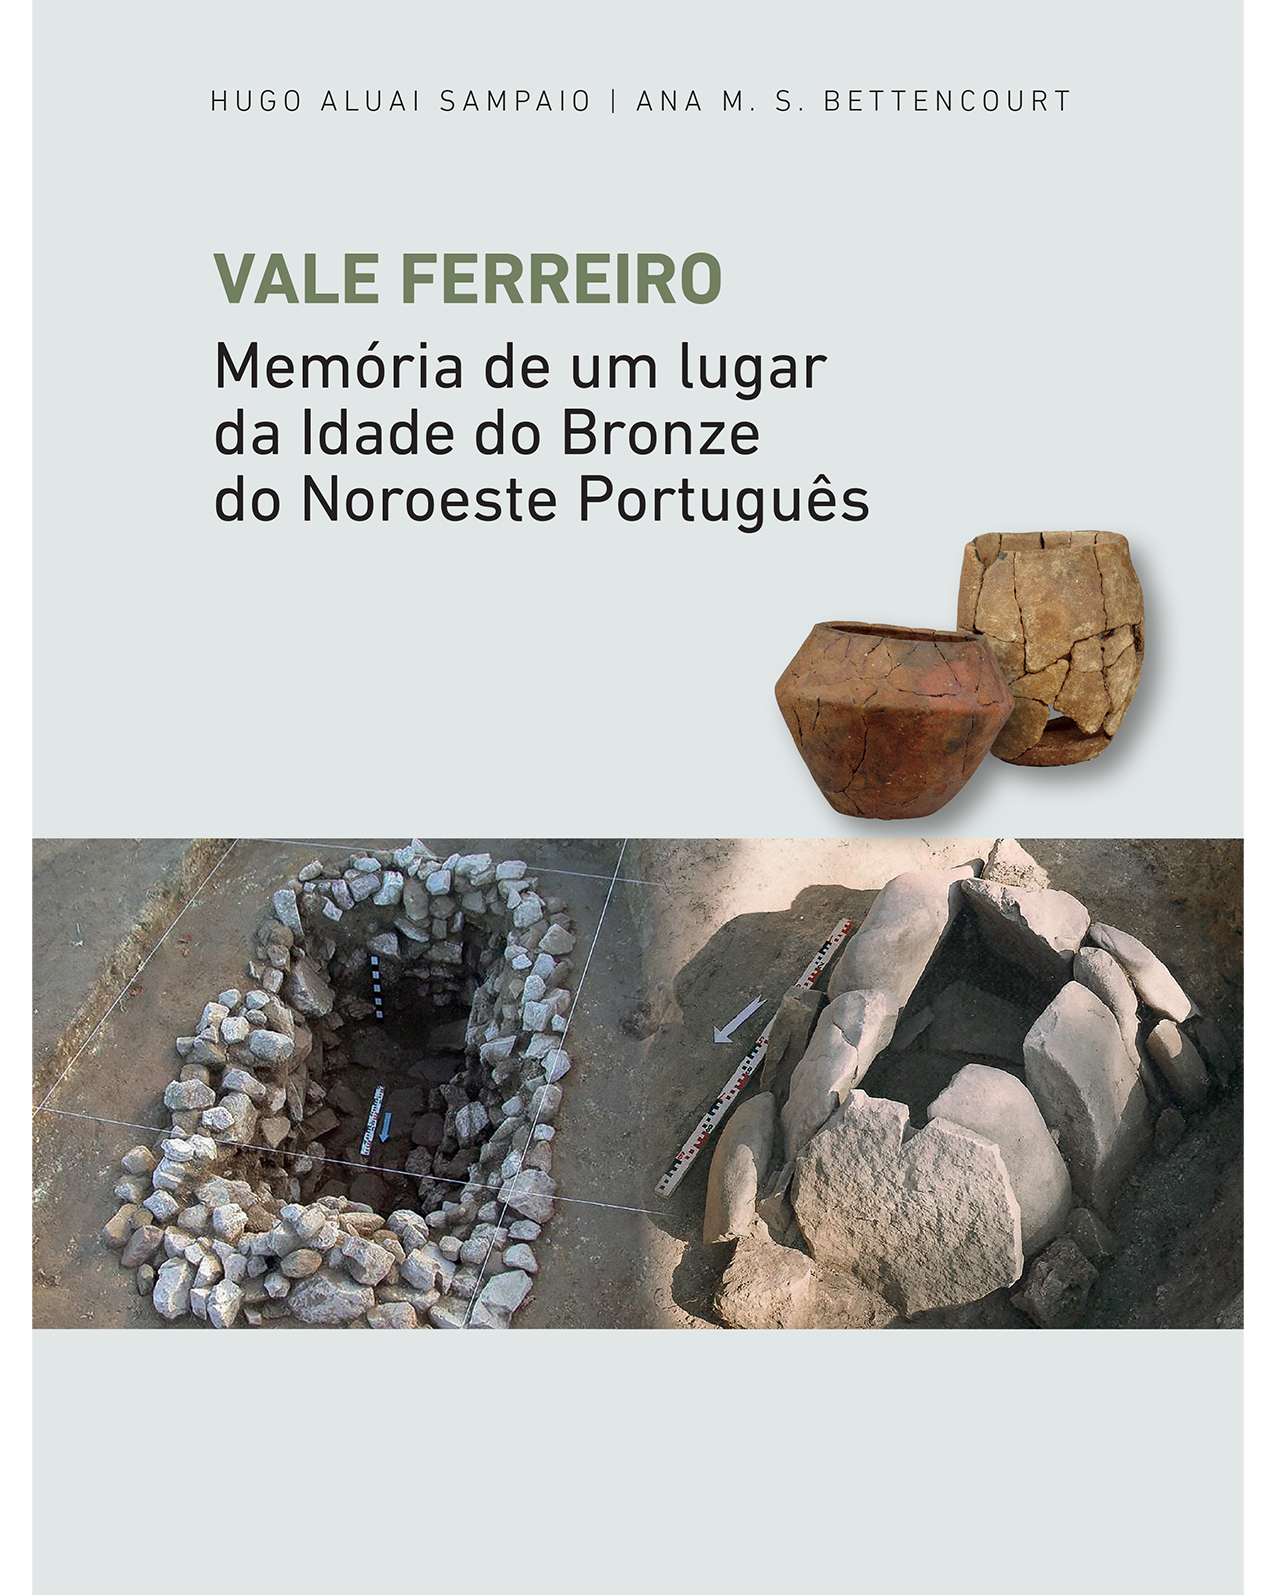 2018 - Vale Ferreiro: memória de um lugar da Idade do Bronze do noroeste português image